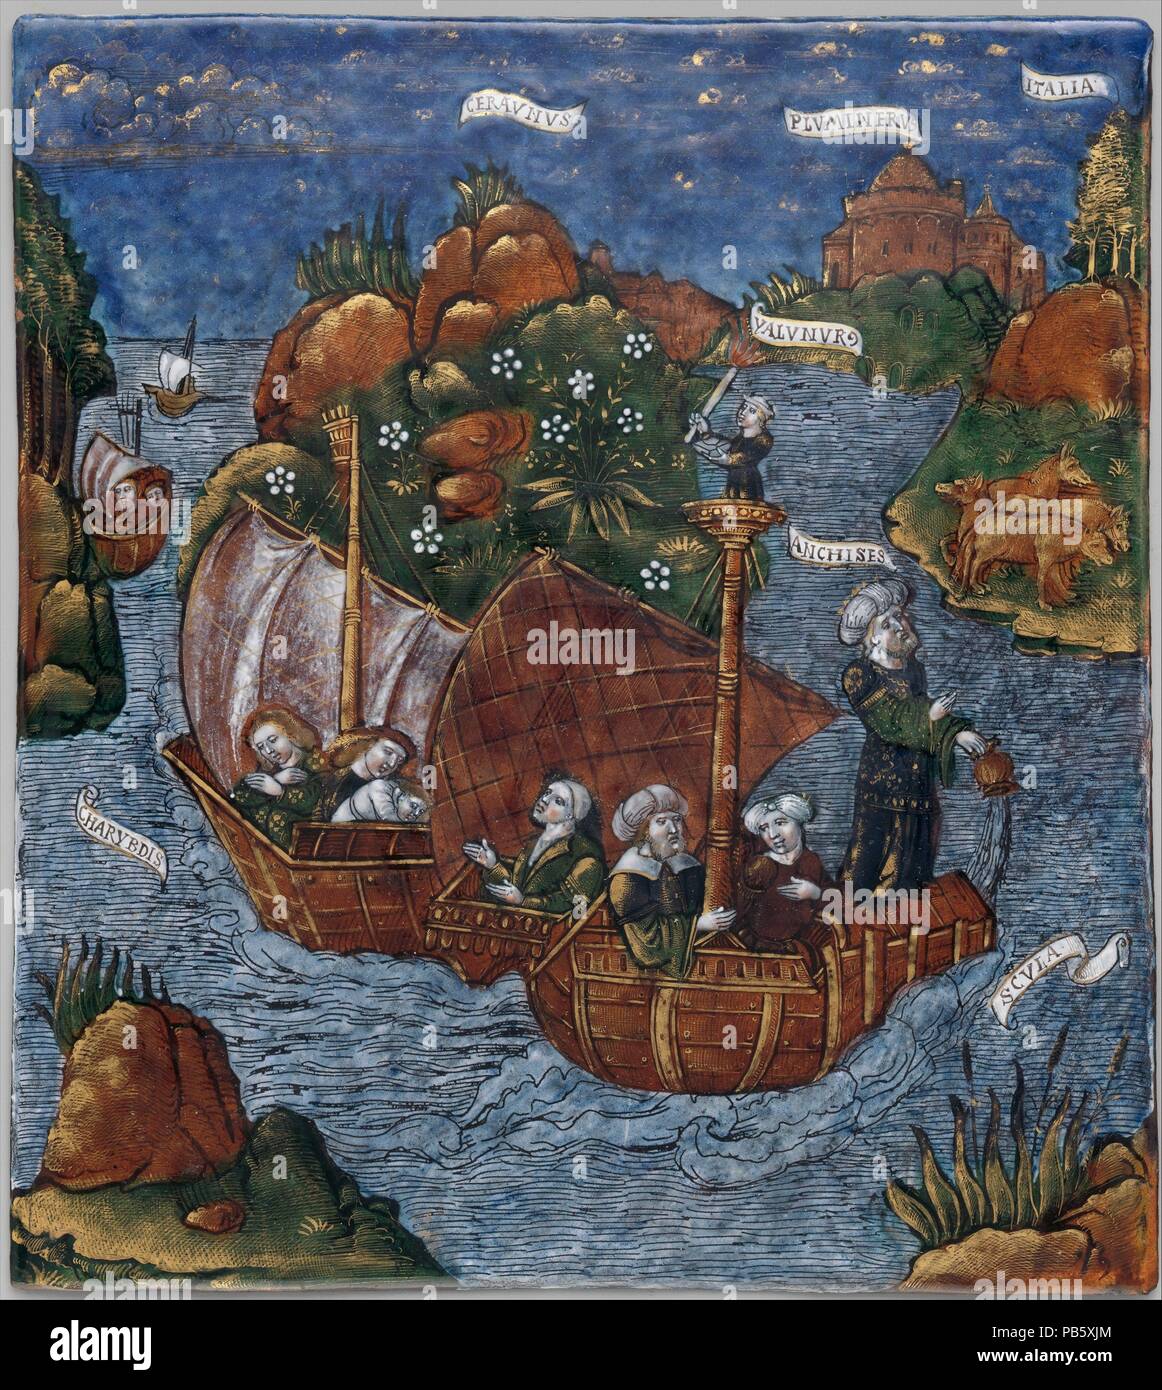 La flotta di Enea arriva in vista dell'Italia (Eneide, Libro III). Artista:  Master dell'Eneide (active ca. 1530-40). Cultura: francese, Limoges.  Dimensioni: 8 3/4 x 7 3/4 in. (22,2 x 19,7 cm). Data: